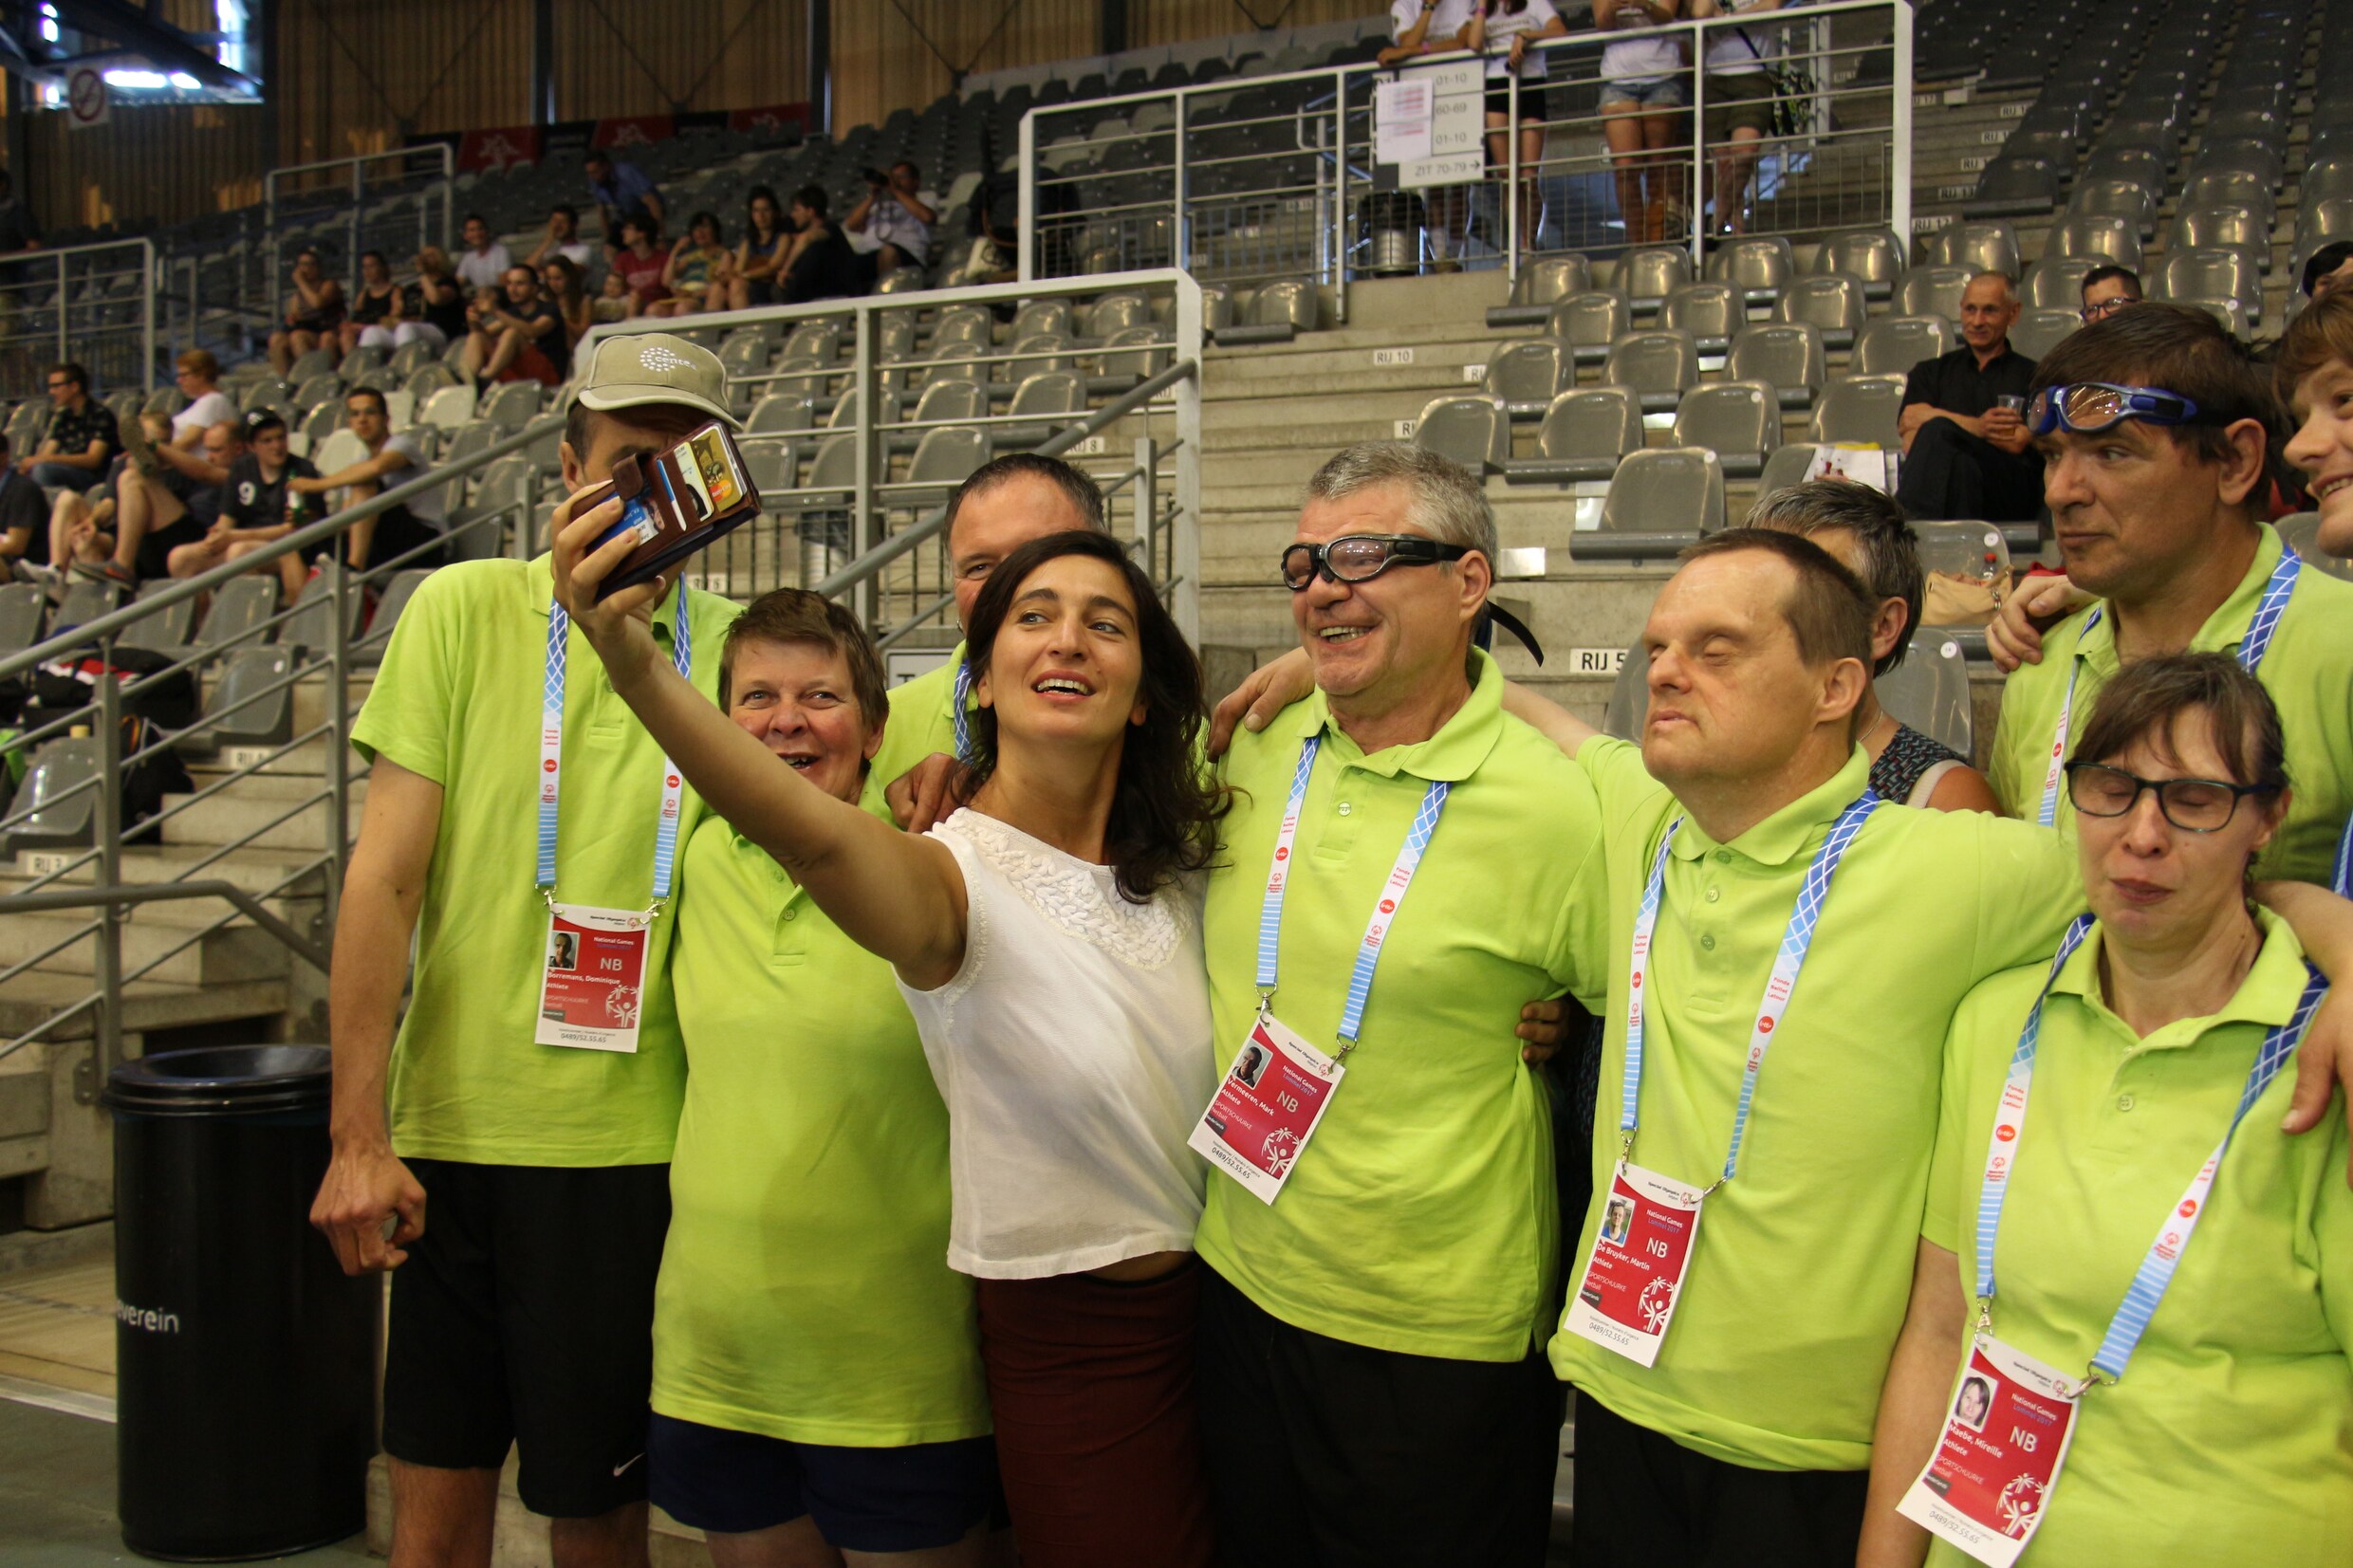 Zuhal Demir bezoekt Special Olympics in Lommel: "Zeker geen troostprijs"